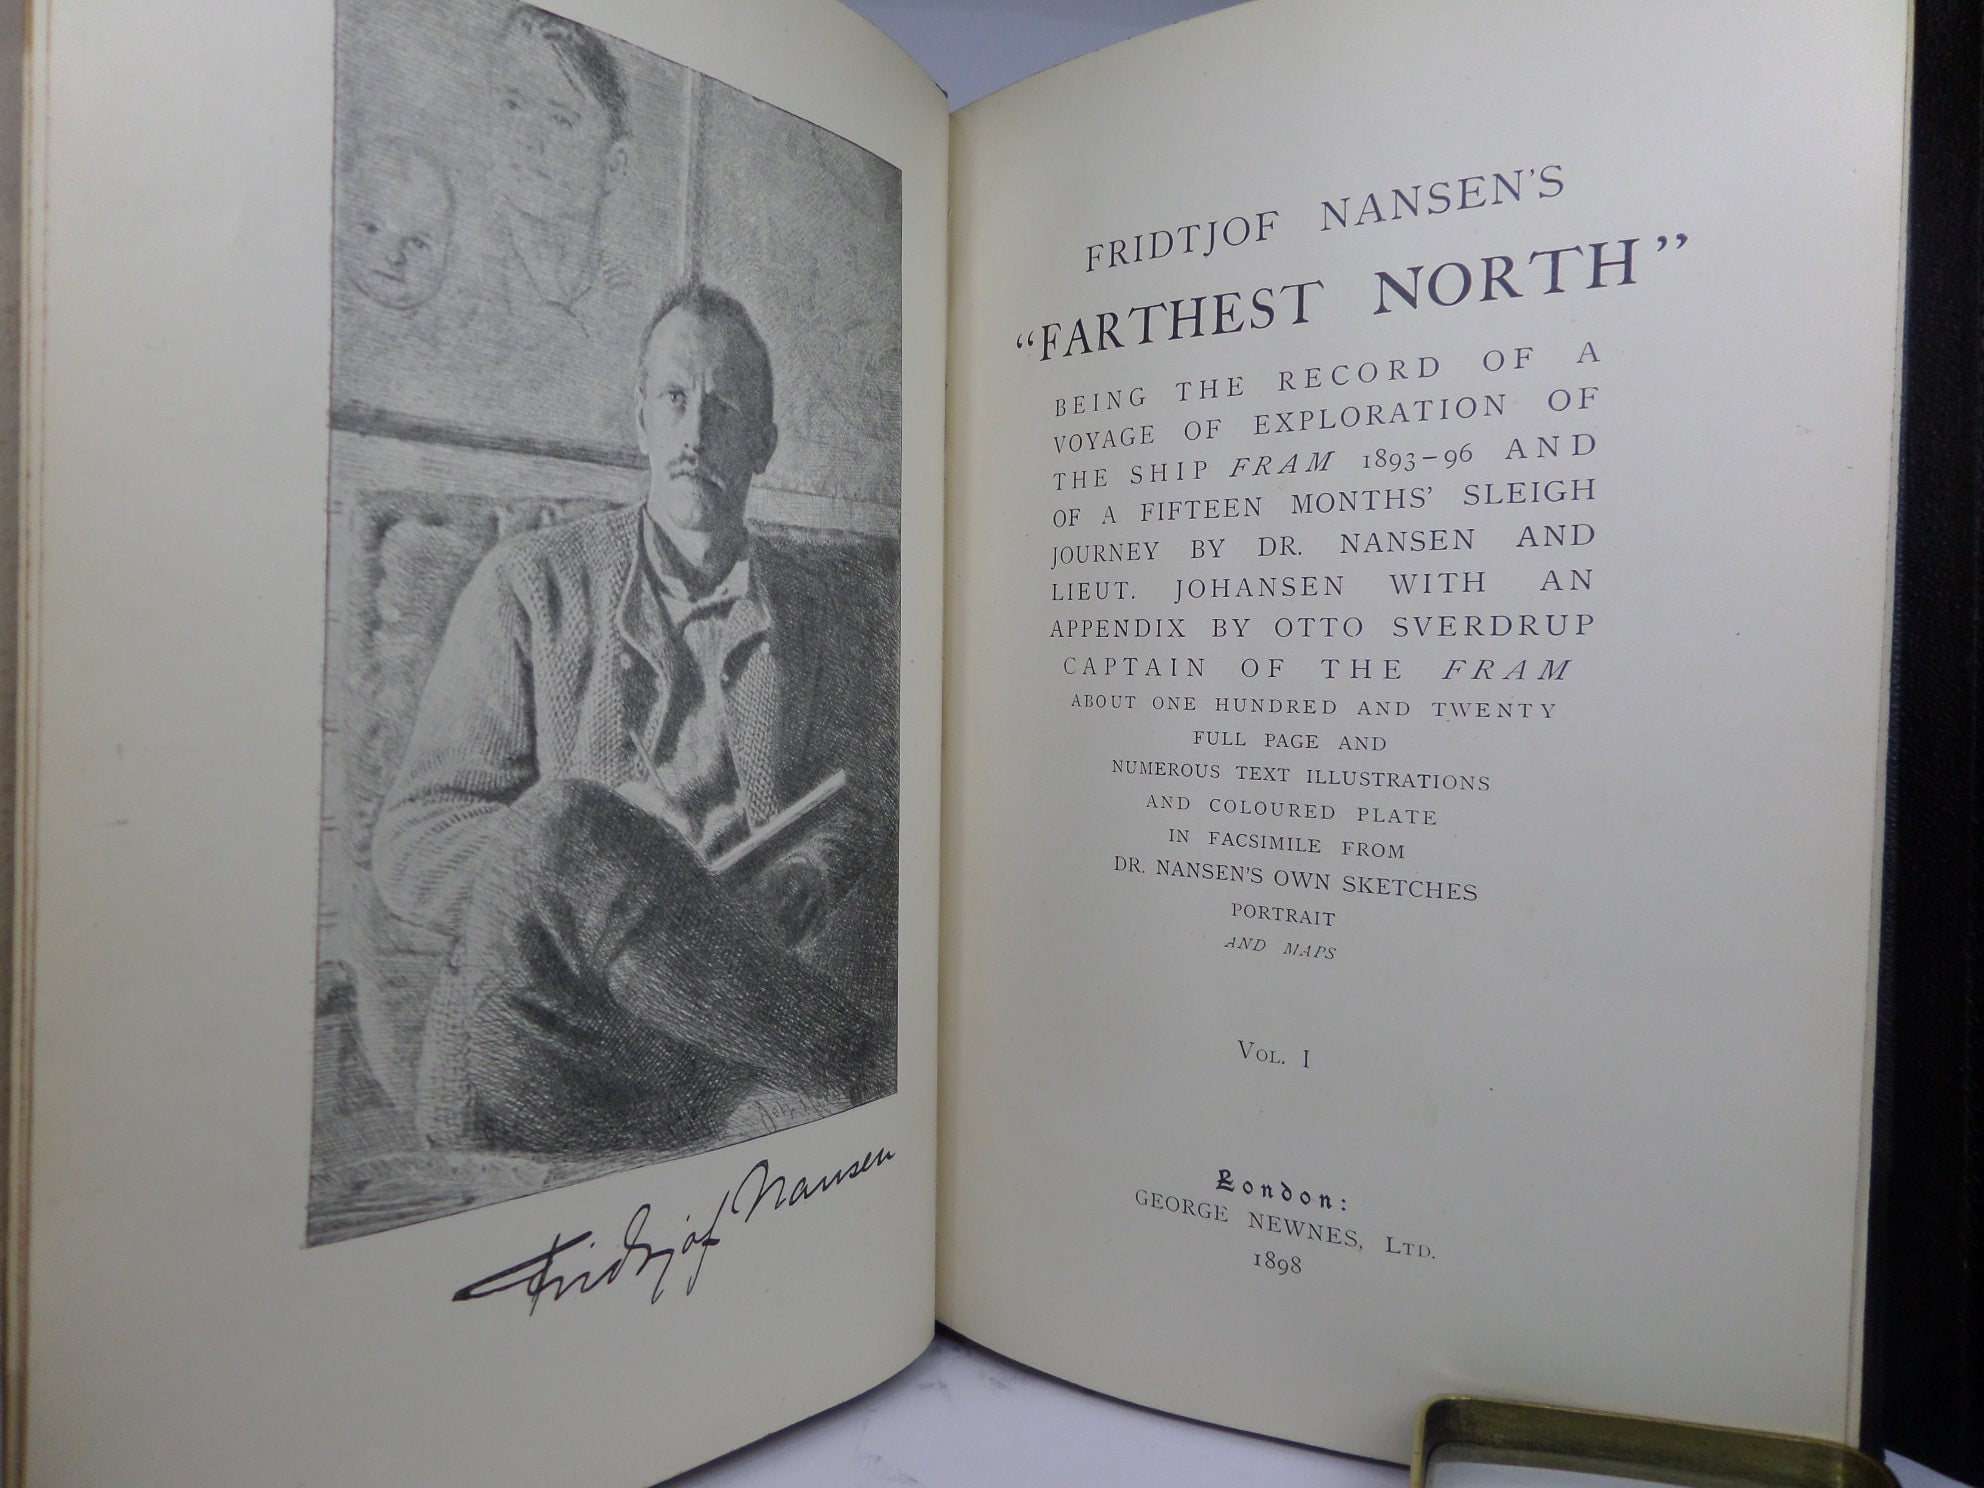 FARTHEST NORTH BY FRIDTJOF NANSEN 1898 TWO VOLUMES LEATHER BOUND